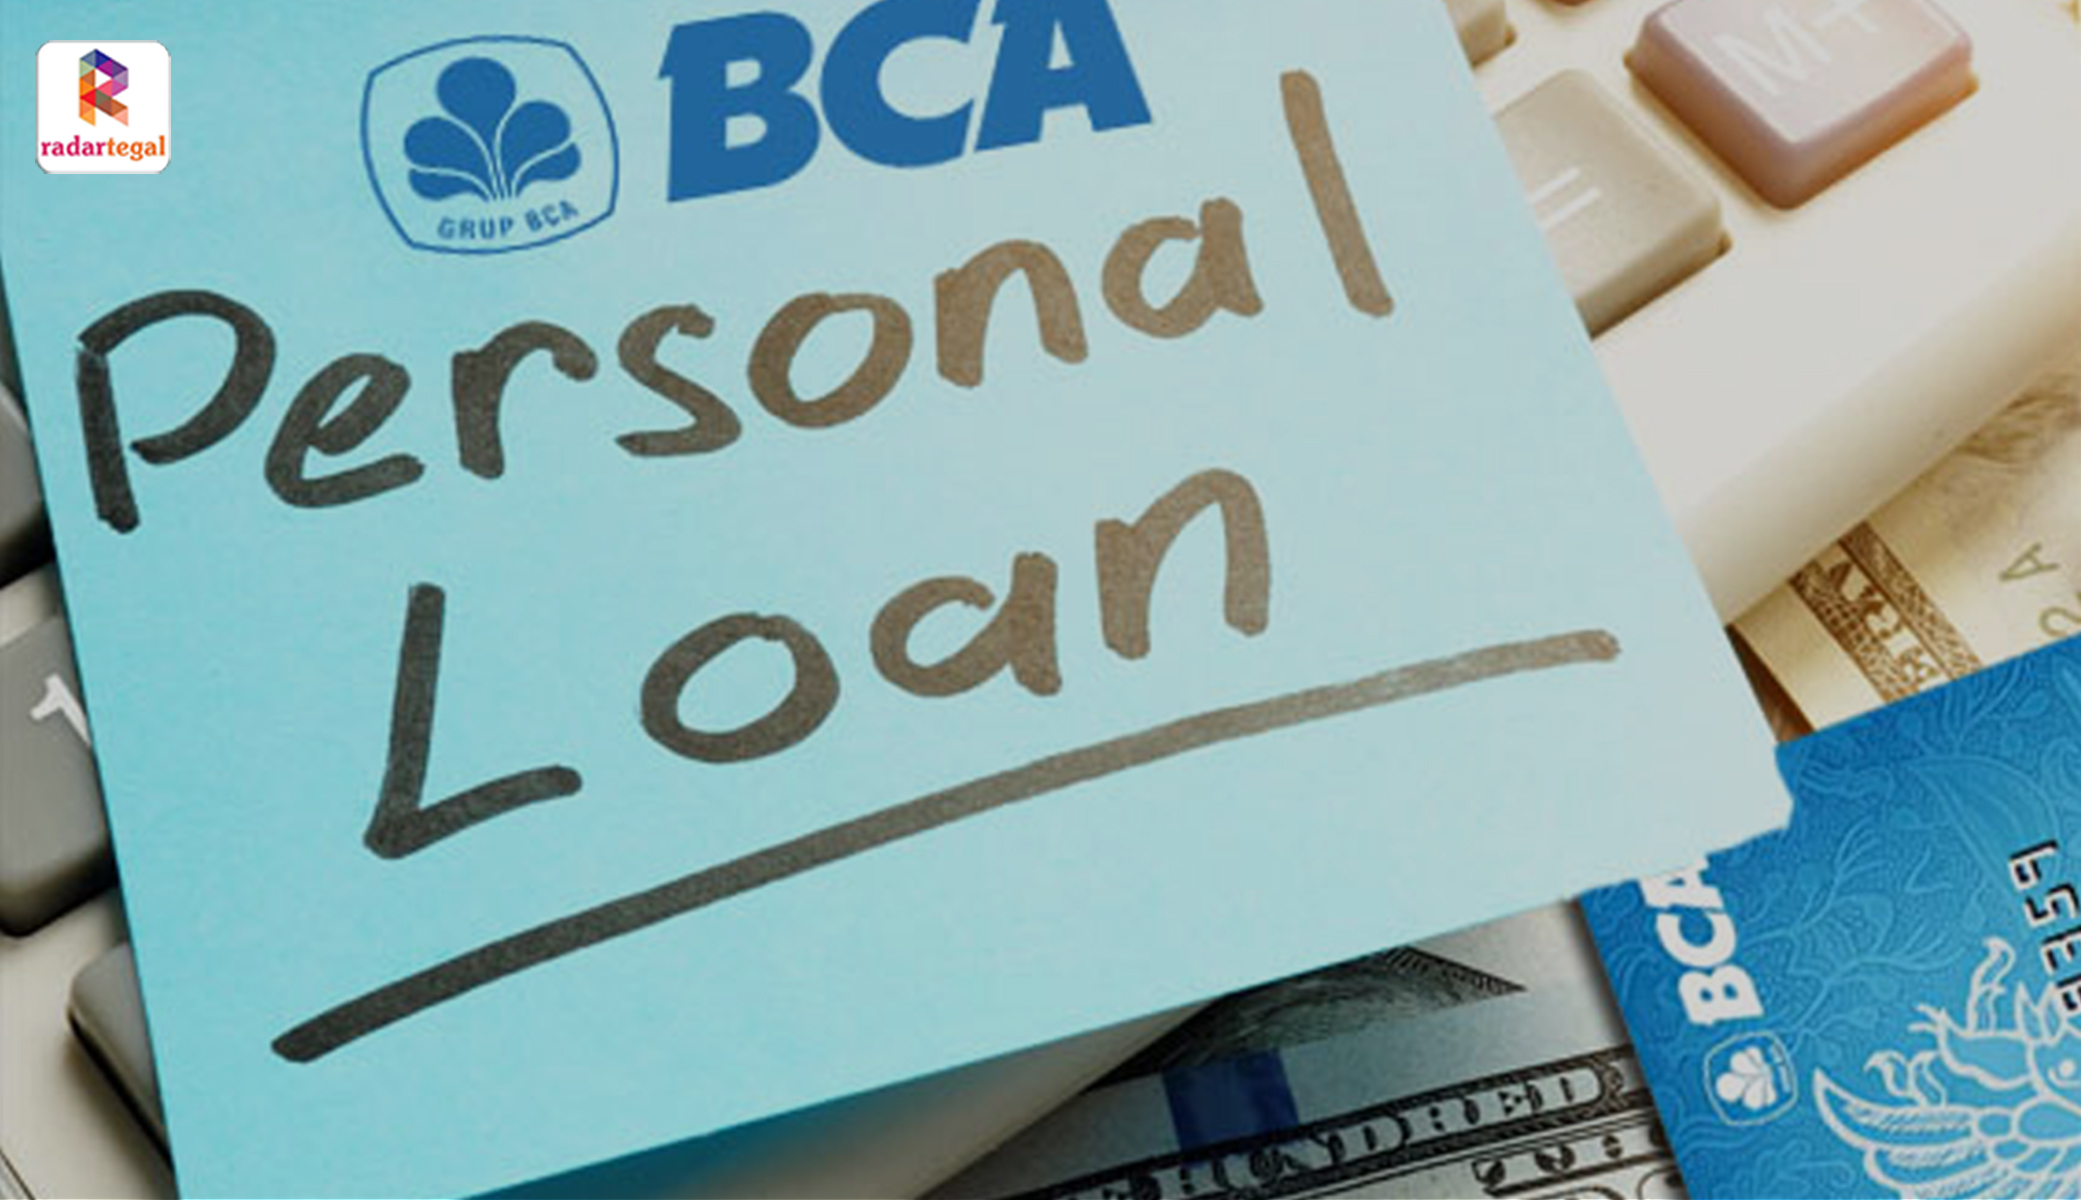 Pinjam Uang di BCA Personal Loan, Bisa Dapat Rp100 Juta Tenor Lama